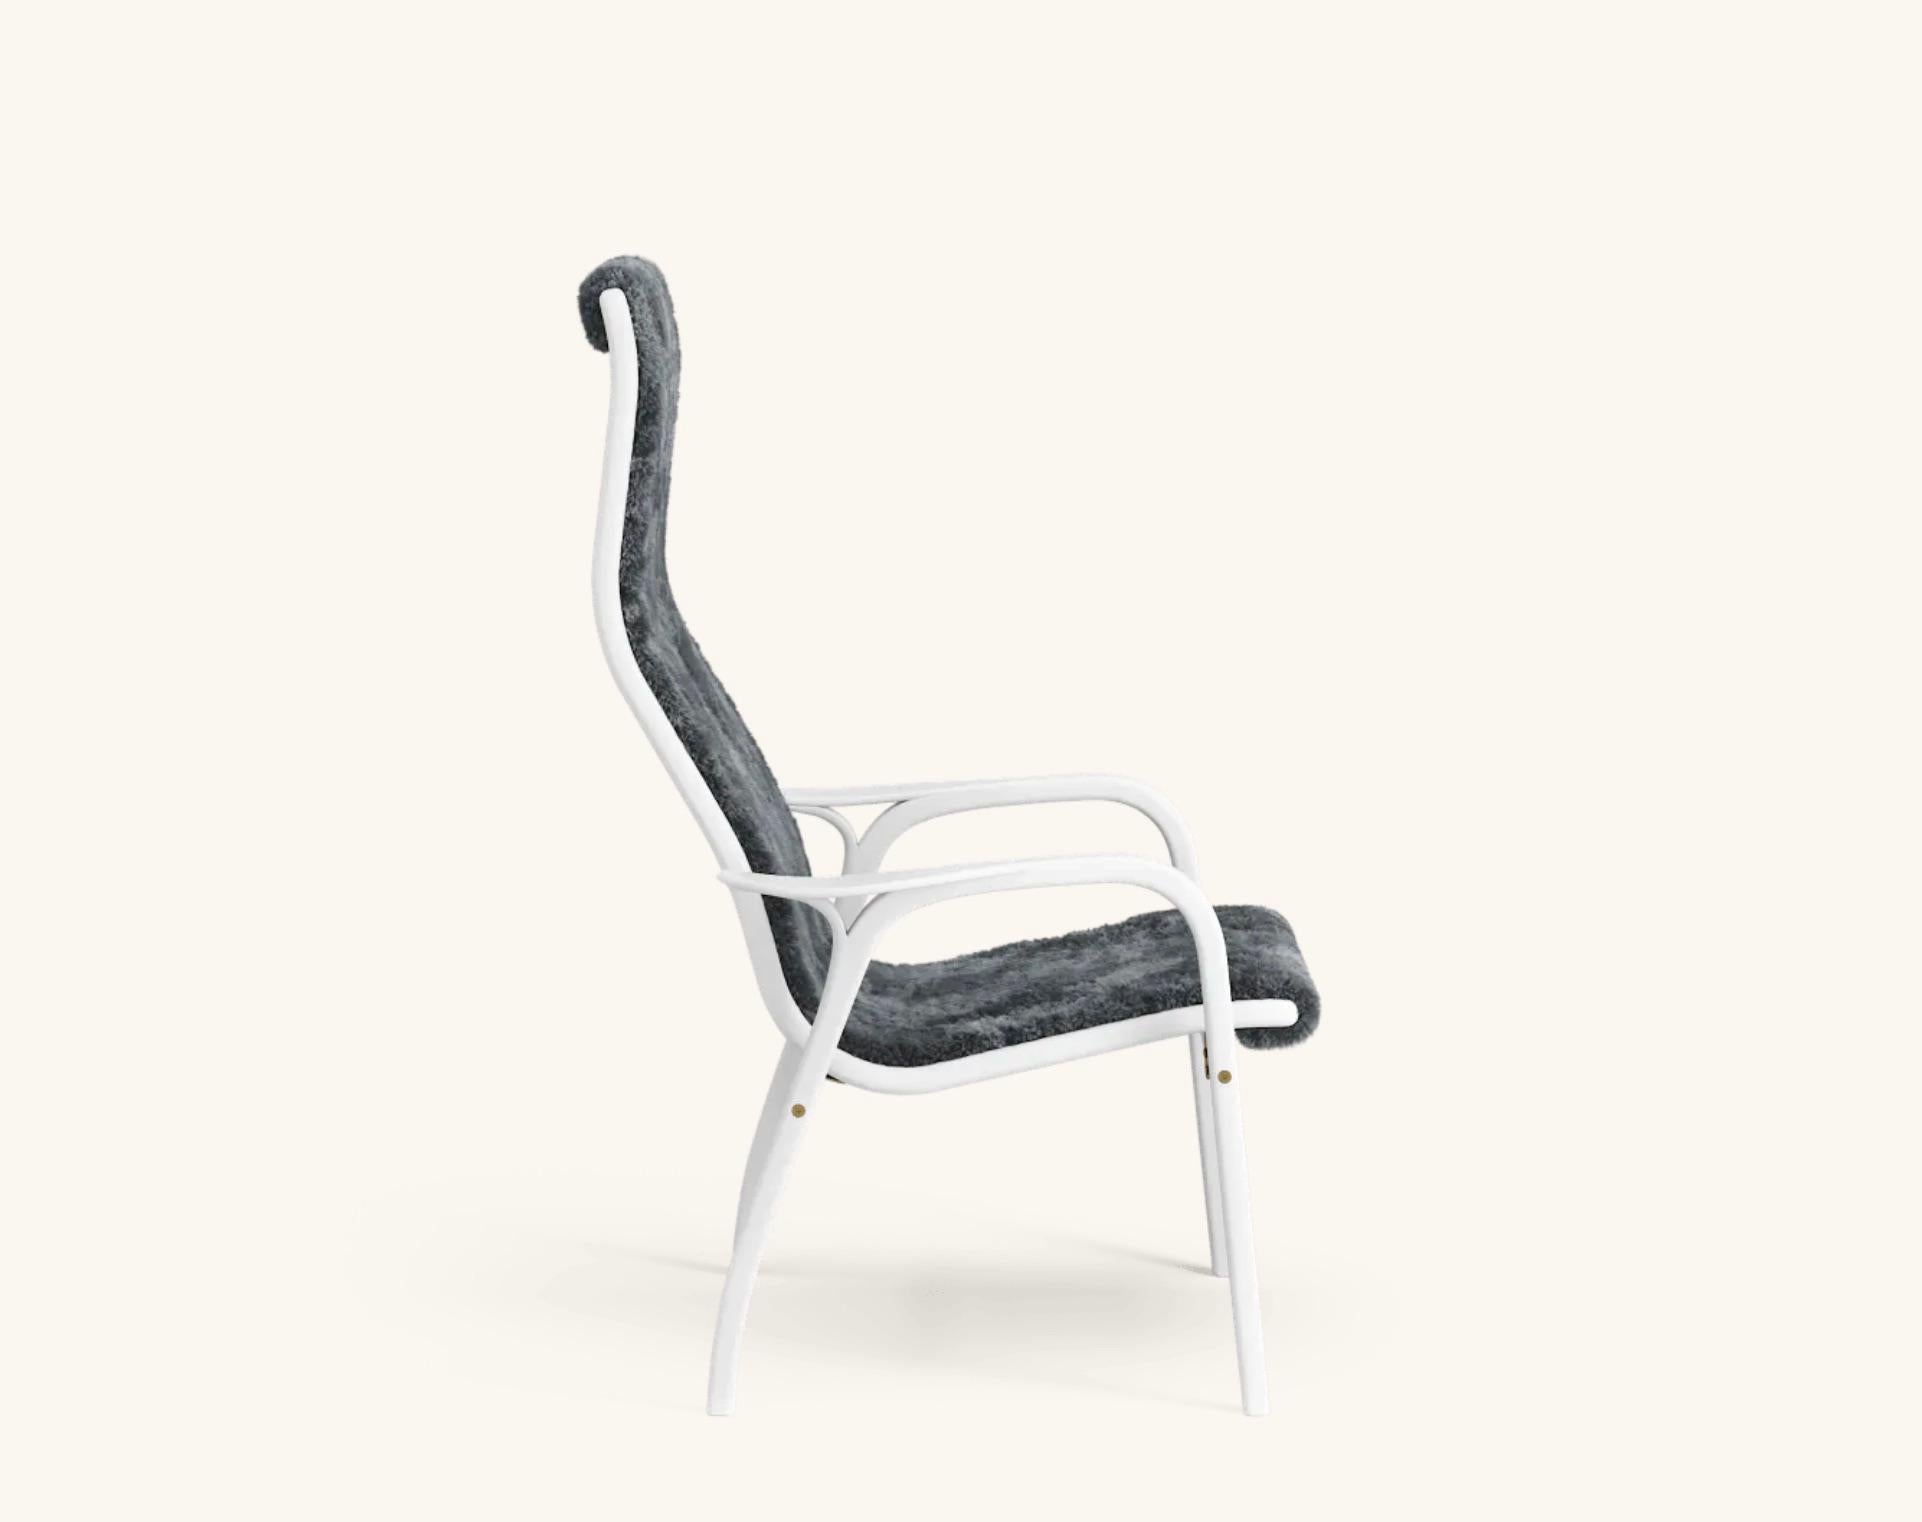 Yngve Ekström Lamino Sessel von Swedese aus laminierter weißer Esche und Schafsleder 'Charcoal'.

Der Lamino von Yngve Ekström ist einer der kultigsten skandinavischen Sessel. Dieser 1956 entworfene Stuhl ist nie aus der Mode gekommen. Durch die